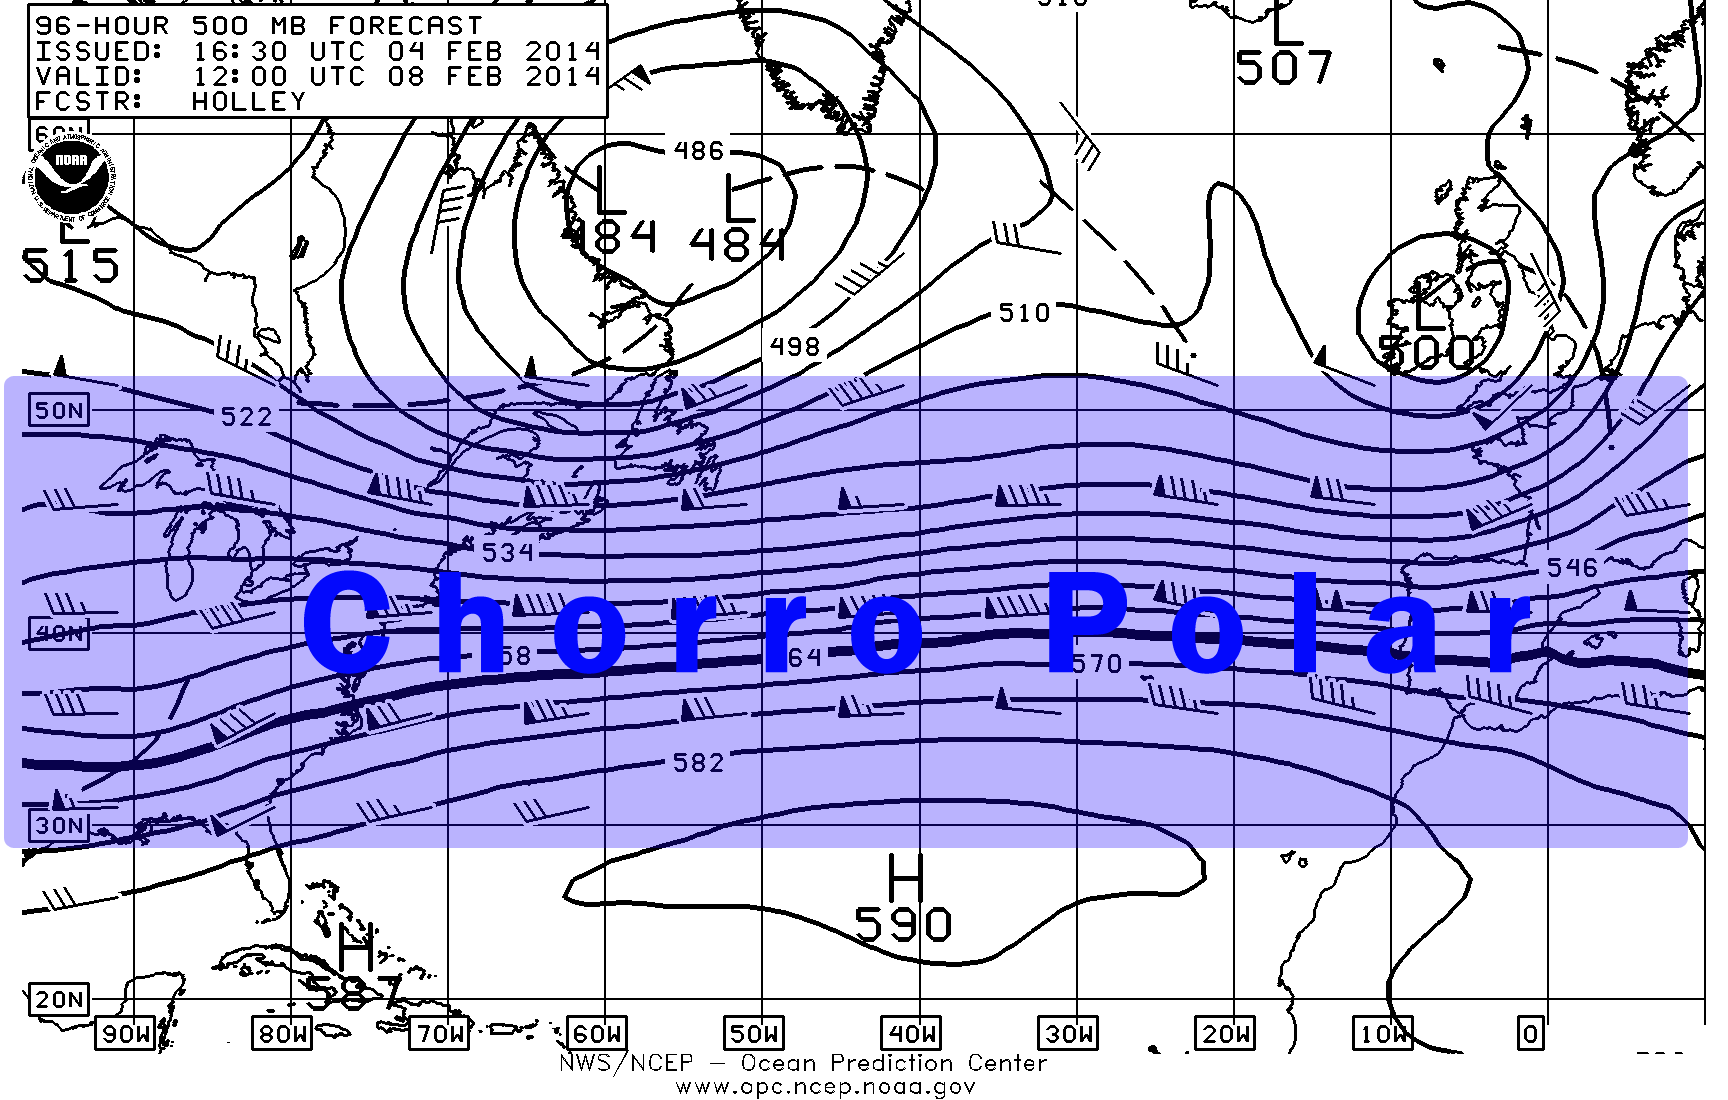 Chorro Polar a 500 hPa, en previsión del GFS para el 8 febrero 2014. Crédito: Centro de Predicción Oceánica.